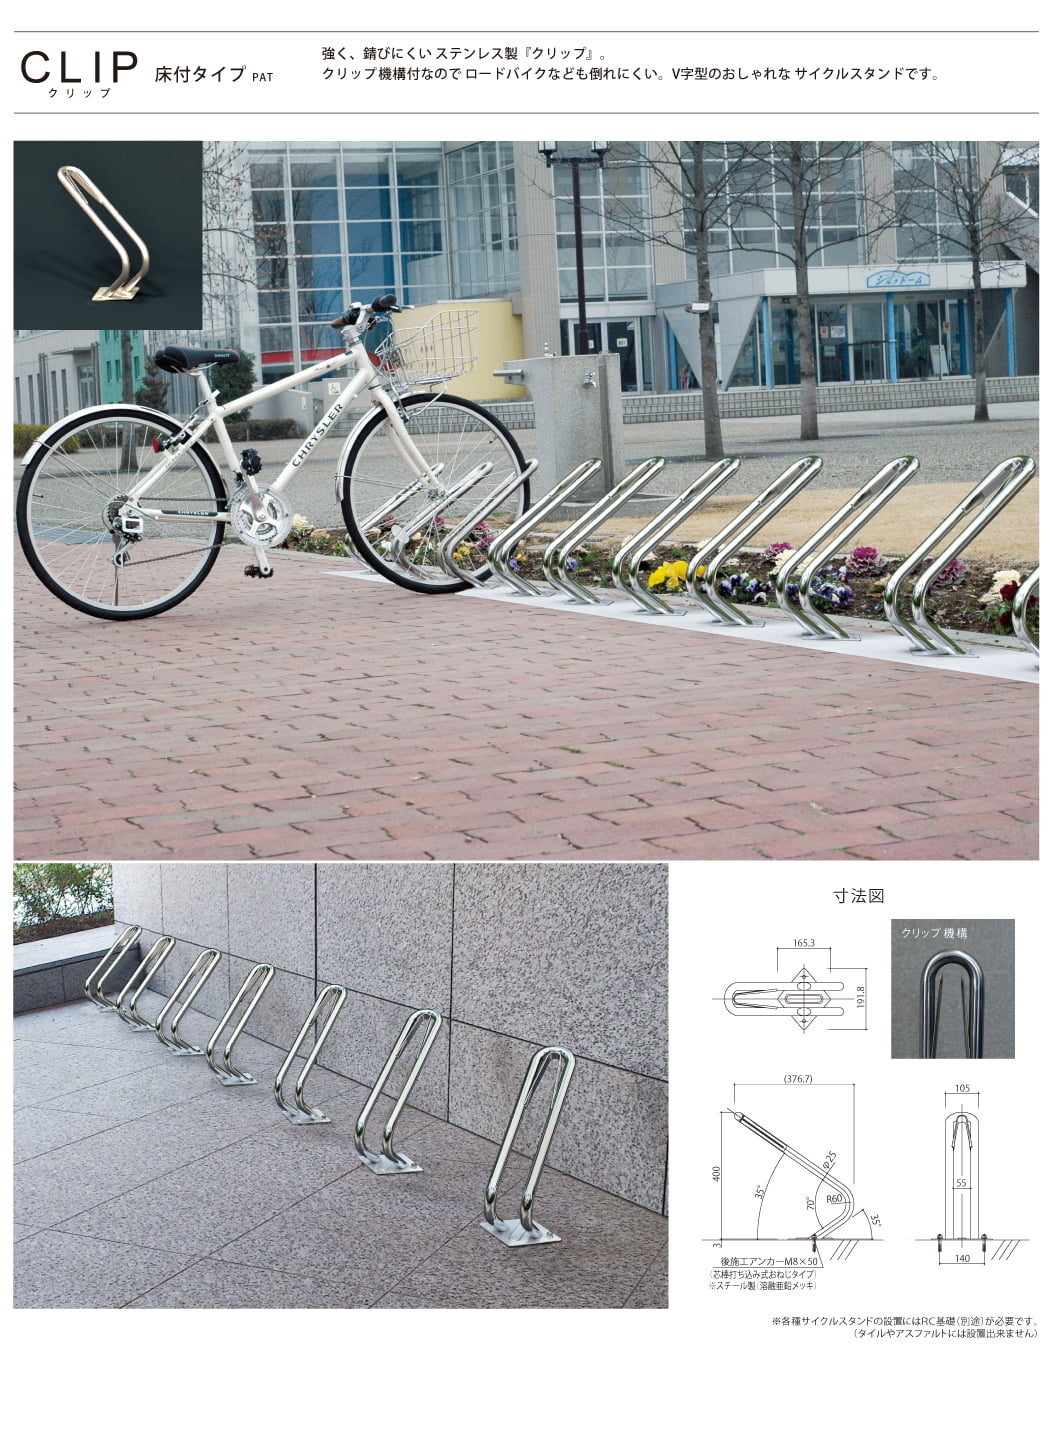 日本全国送料無料 円らせん型 カツデンアーキテック D-NA PK 自転車スタンド Type D-NA PKタイプ 全10色 C-Type  角柱型（自転車模様付き） 床付タイプ サイクルスタンド Cタイプ ステンレス カツデンアーキテック